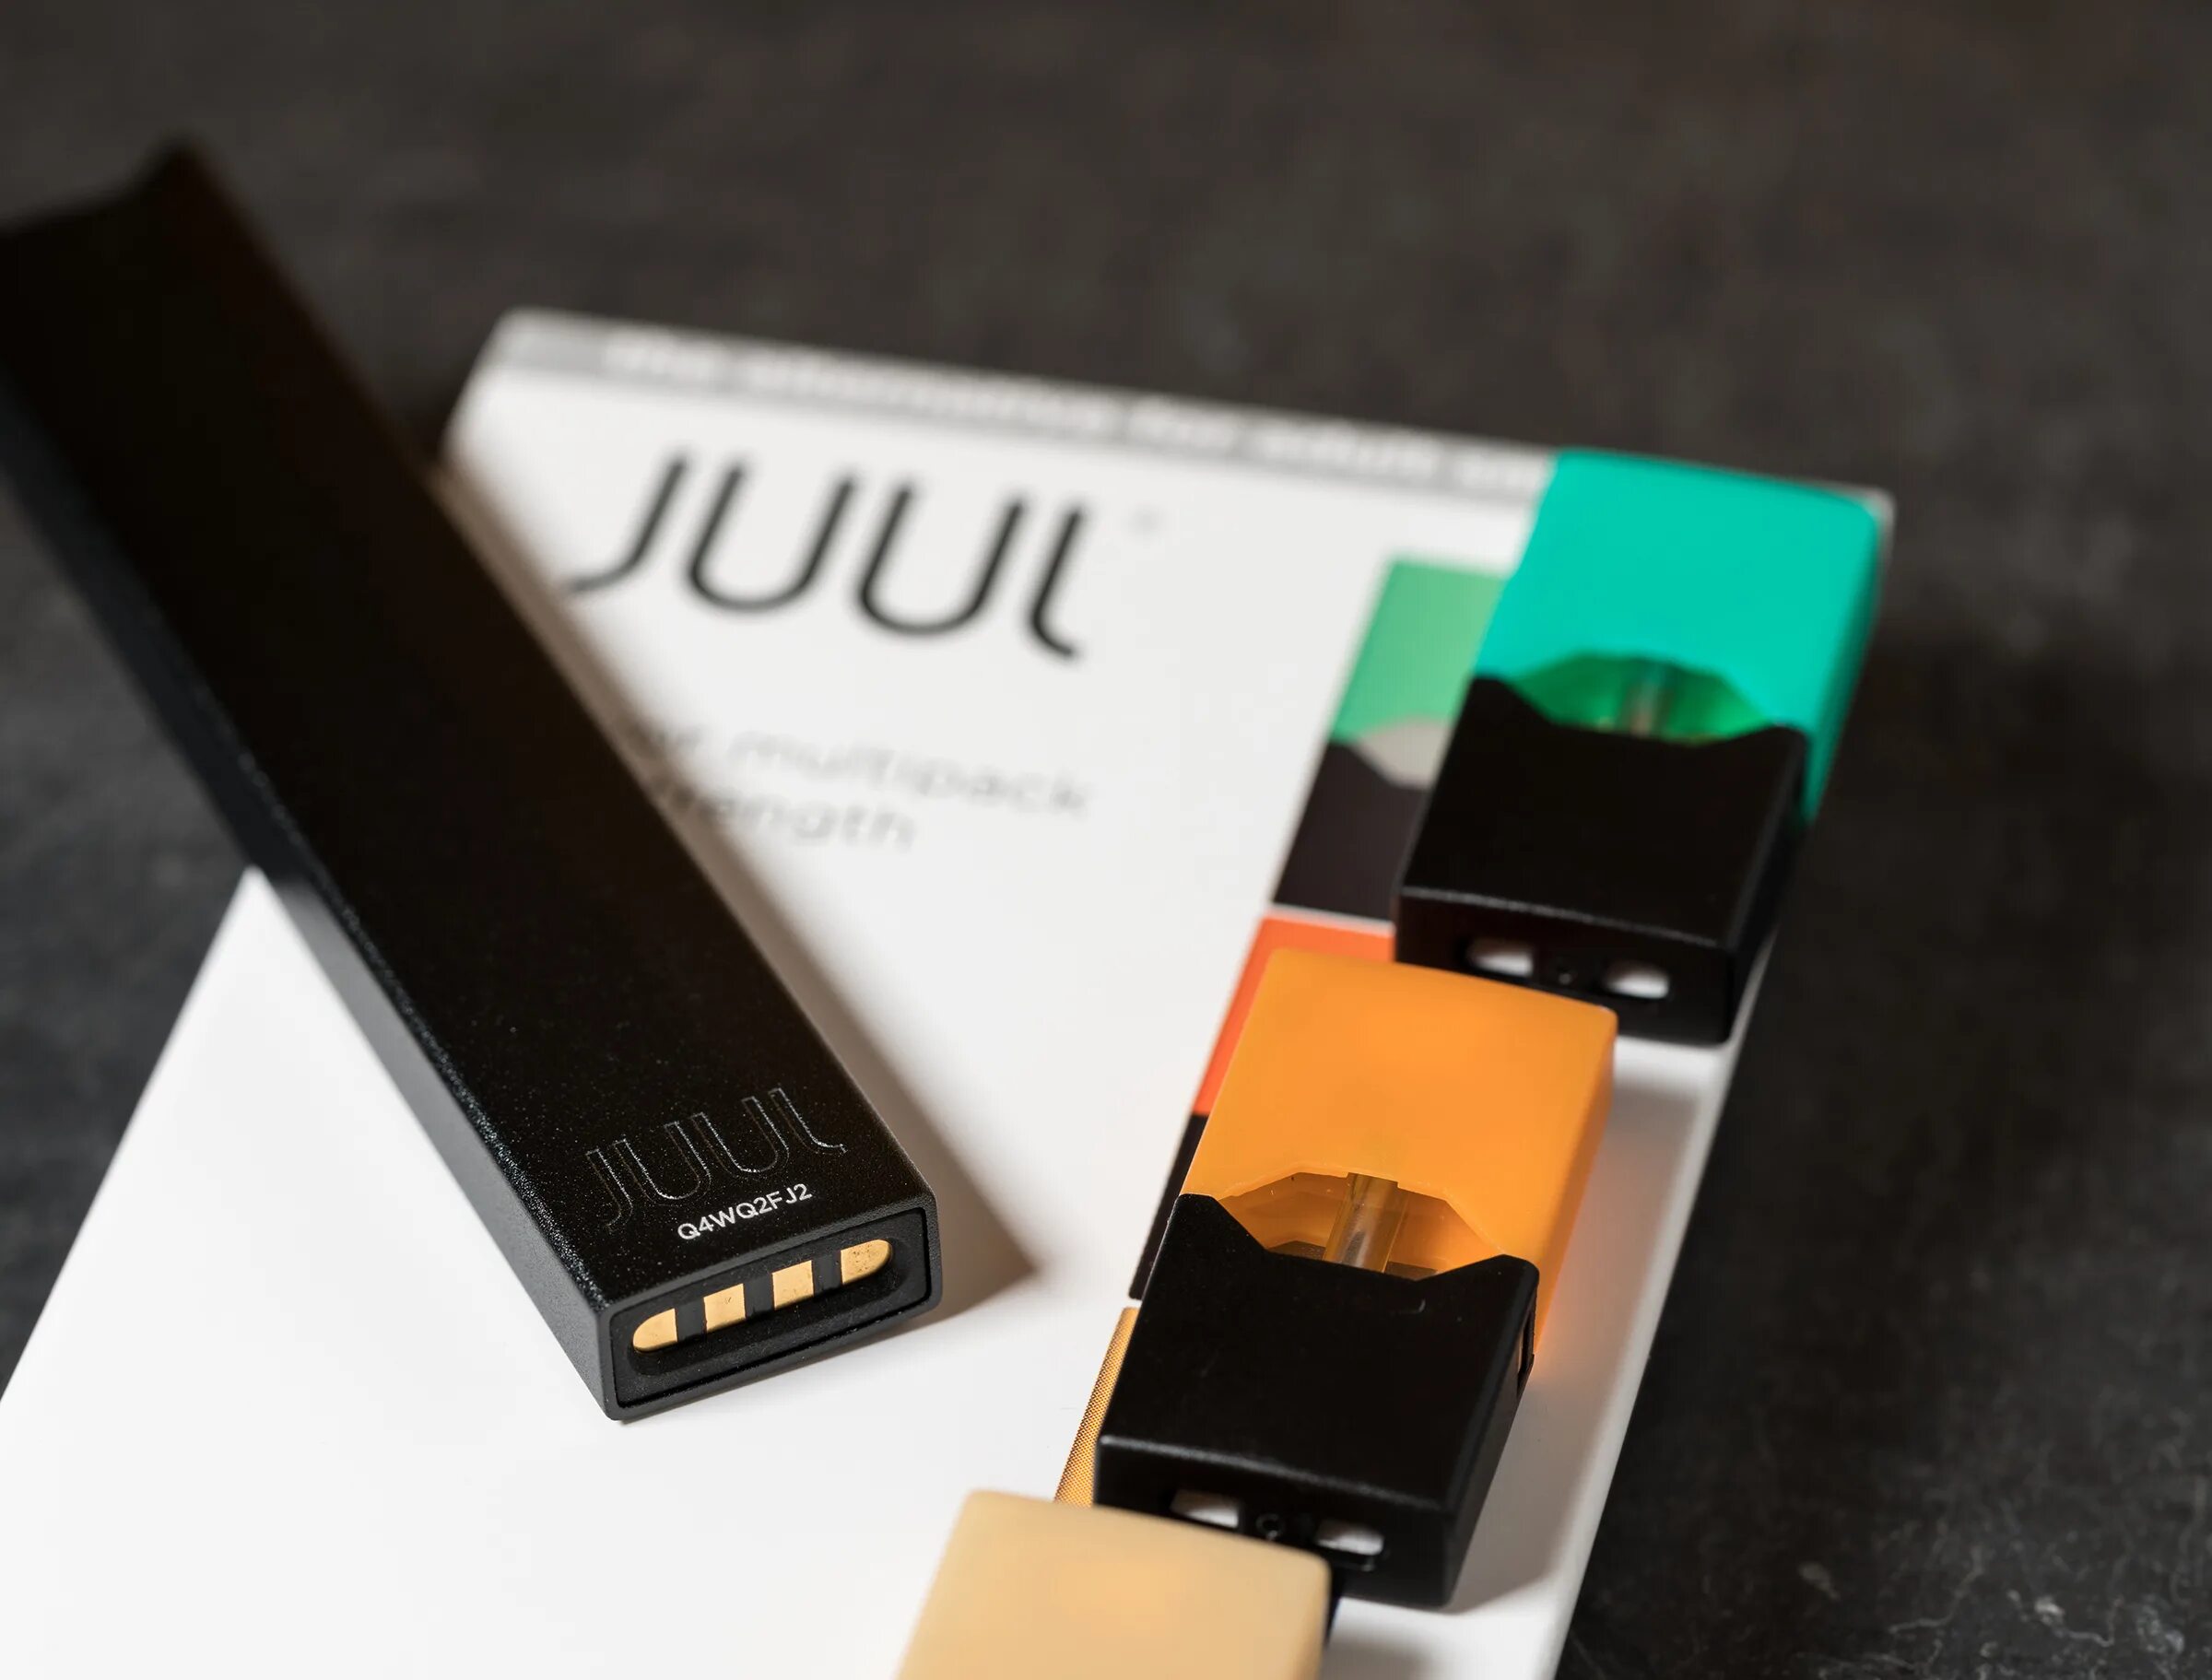 Джул электронная. Juul электронная сигарета. Под электронная сигарета Juul. Электронный испаритель Juul графитовый. Подик Juul.